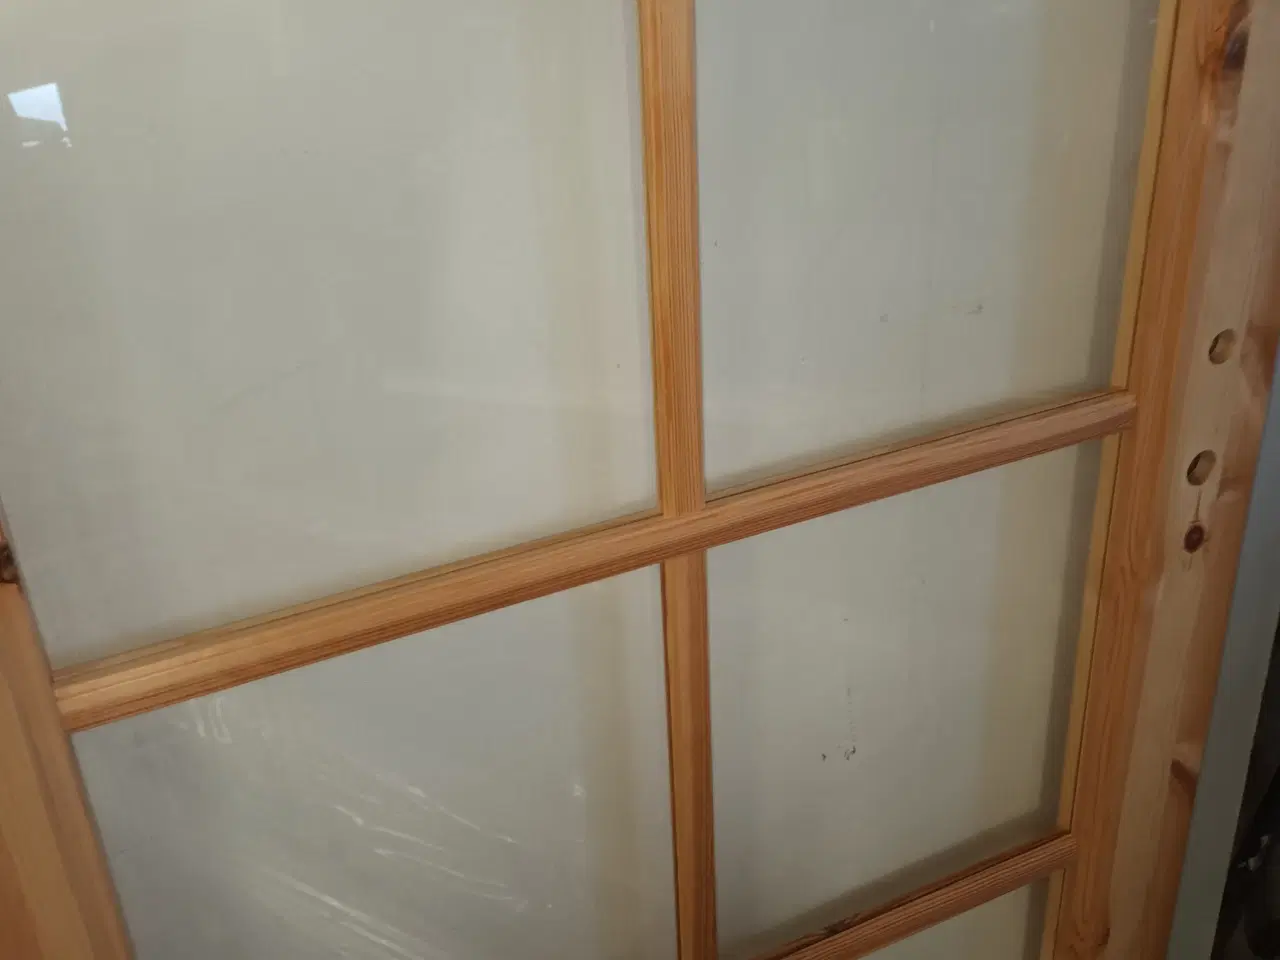 Billede 4 - Indvendige døre med glas